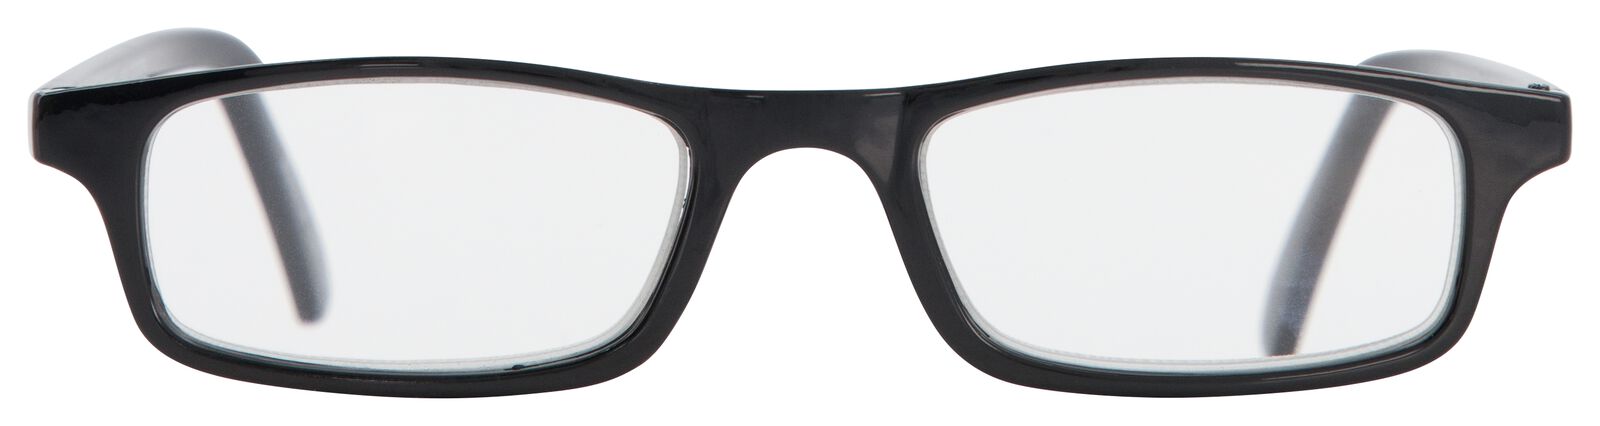 leesbril kunststof +2.0 - HEMA